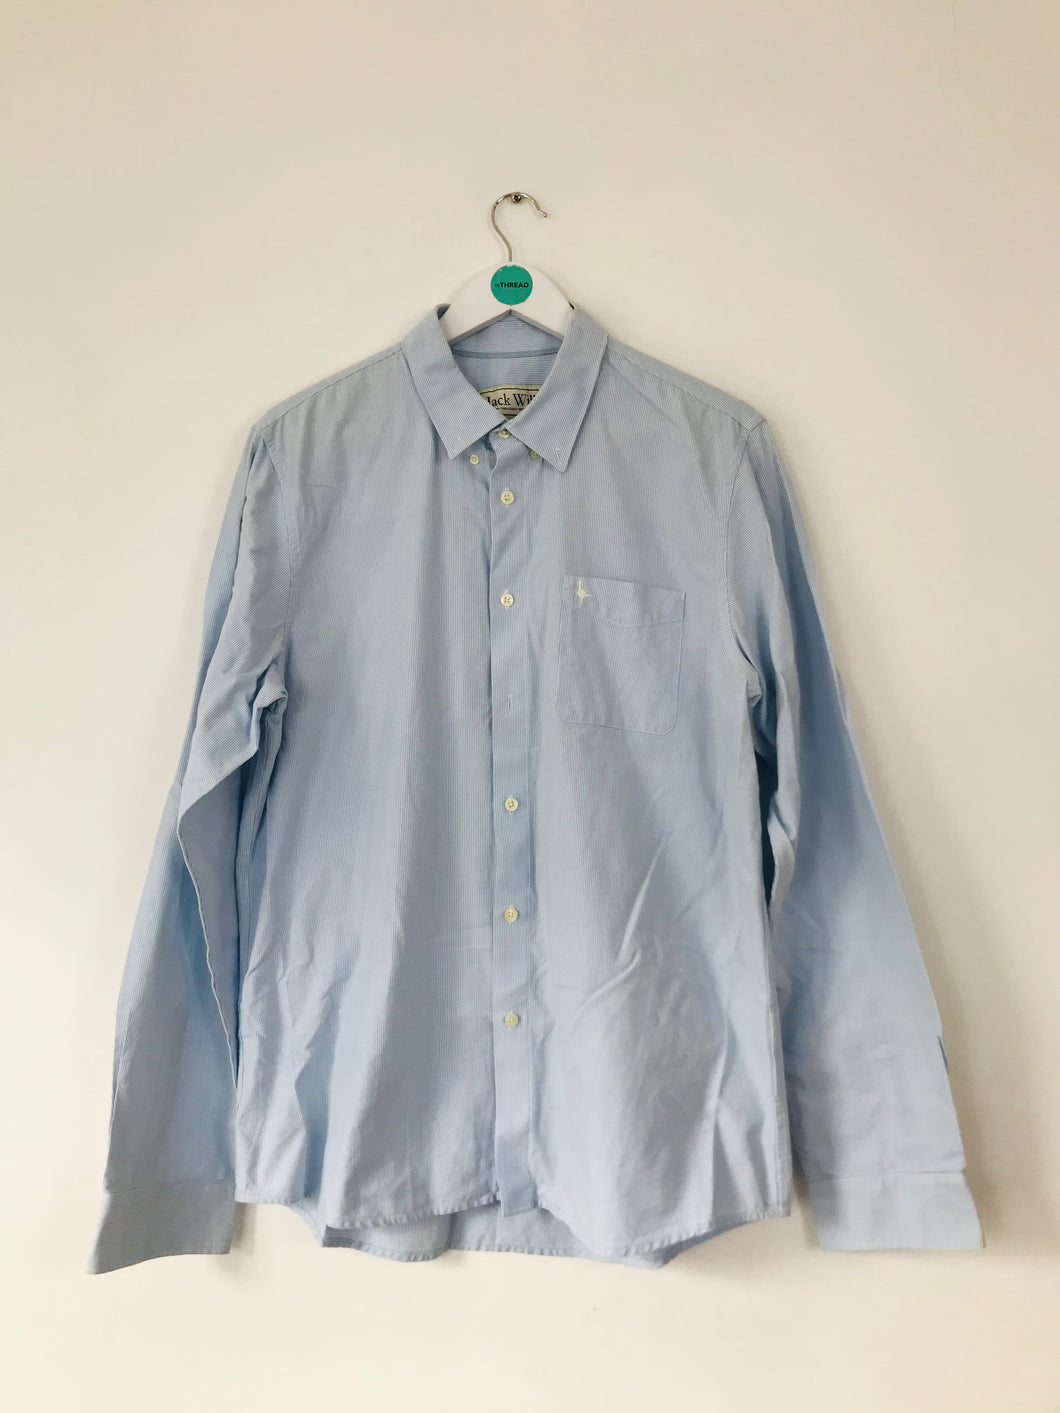 Jack Wills Men’s Button Down Shirt | XL | Blue